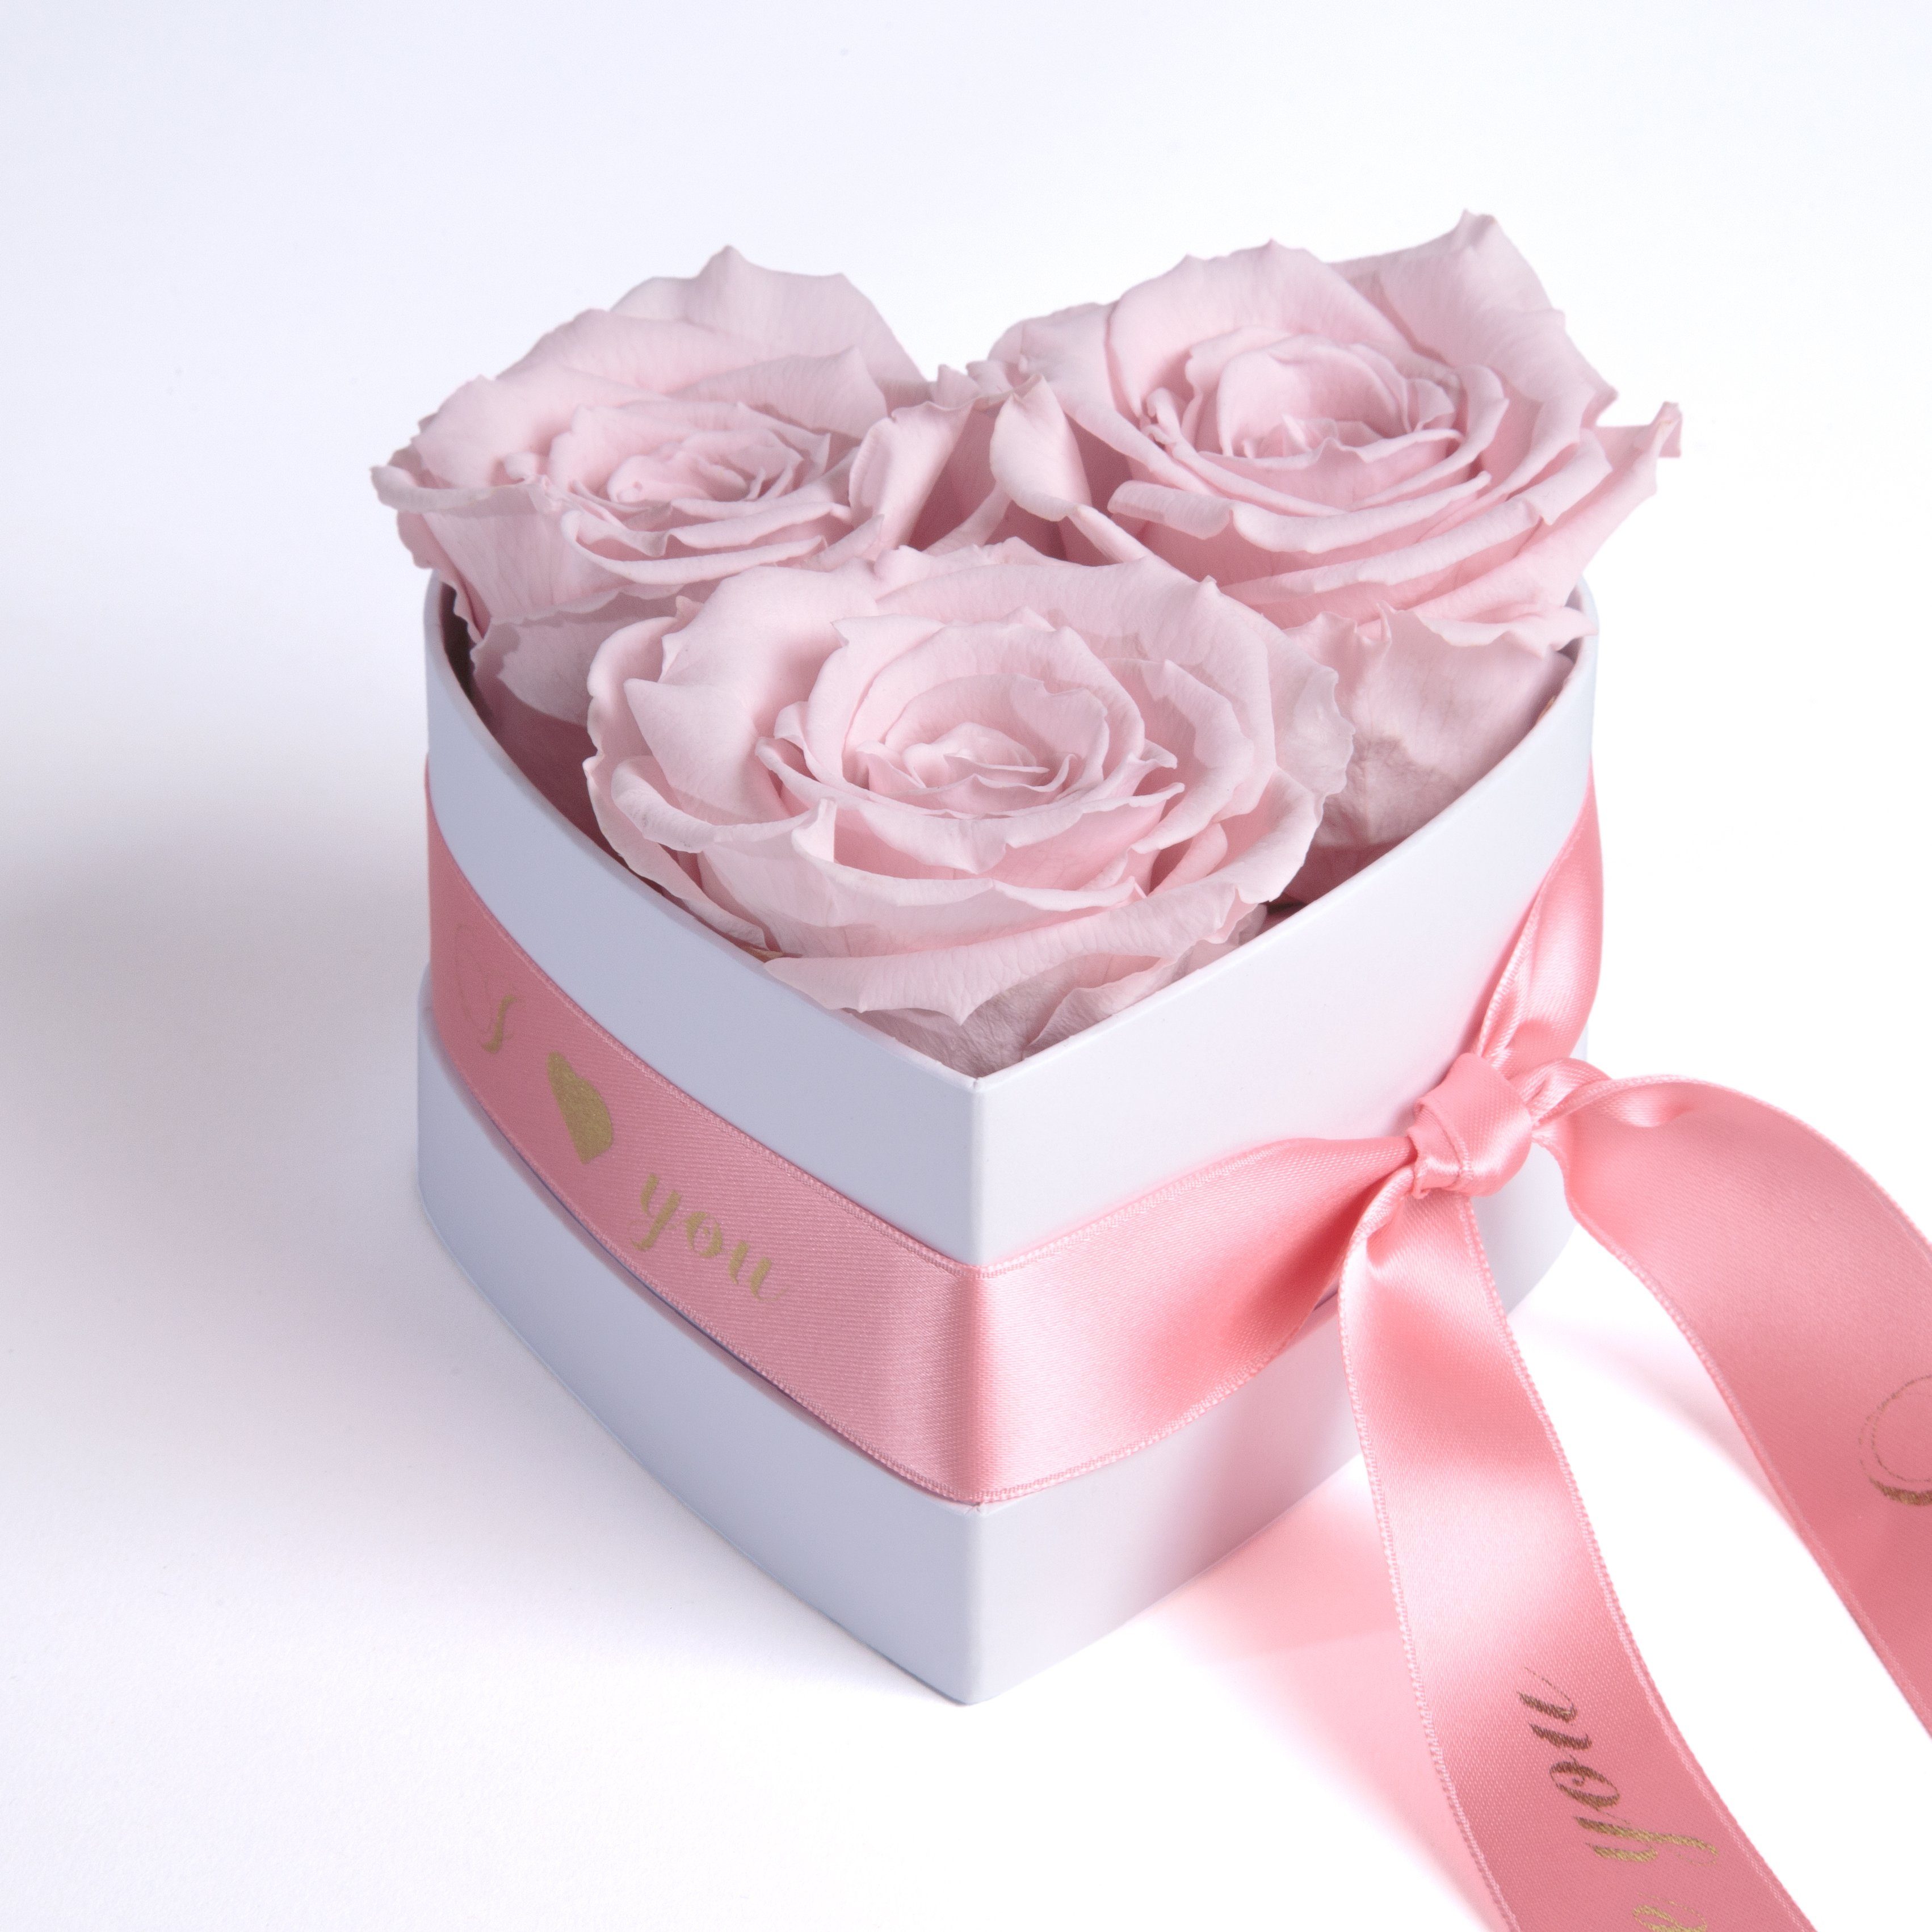 Kunstblume Rosenbox Herz 3 konservierte Infinity Rosen in Box I Love You Rose, ROSEMARIE SCHULZ Heidelberg, Höhe 8.5 cm, Valentinstag Geschenk für Sie Rosa